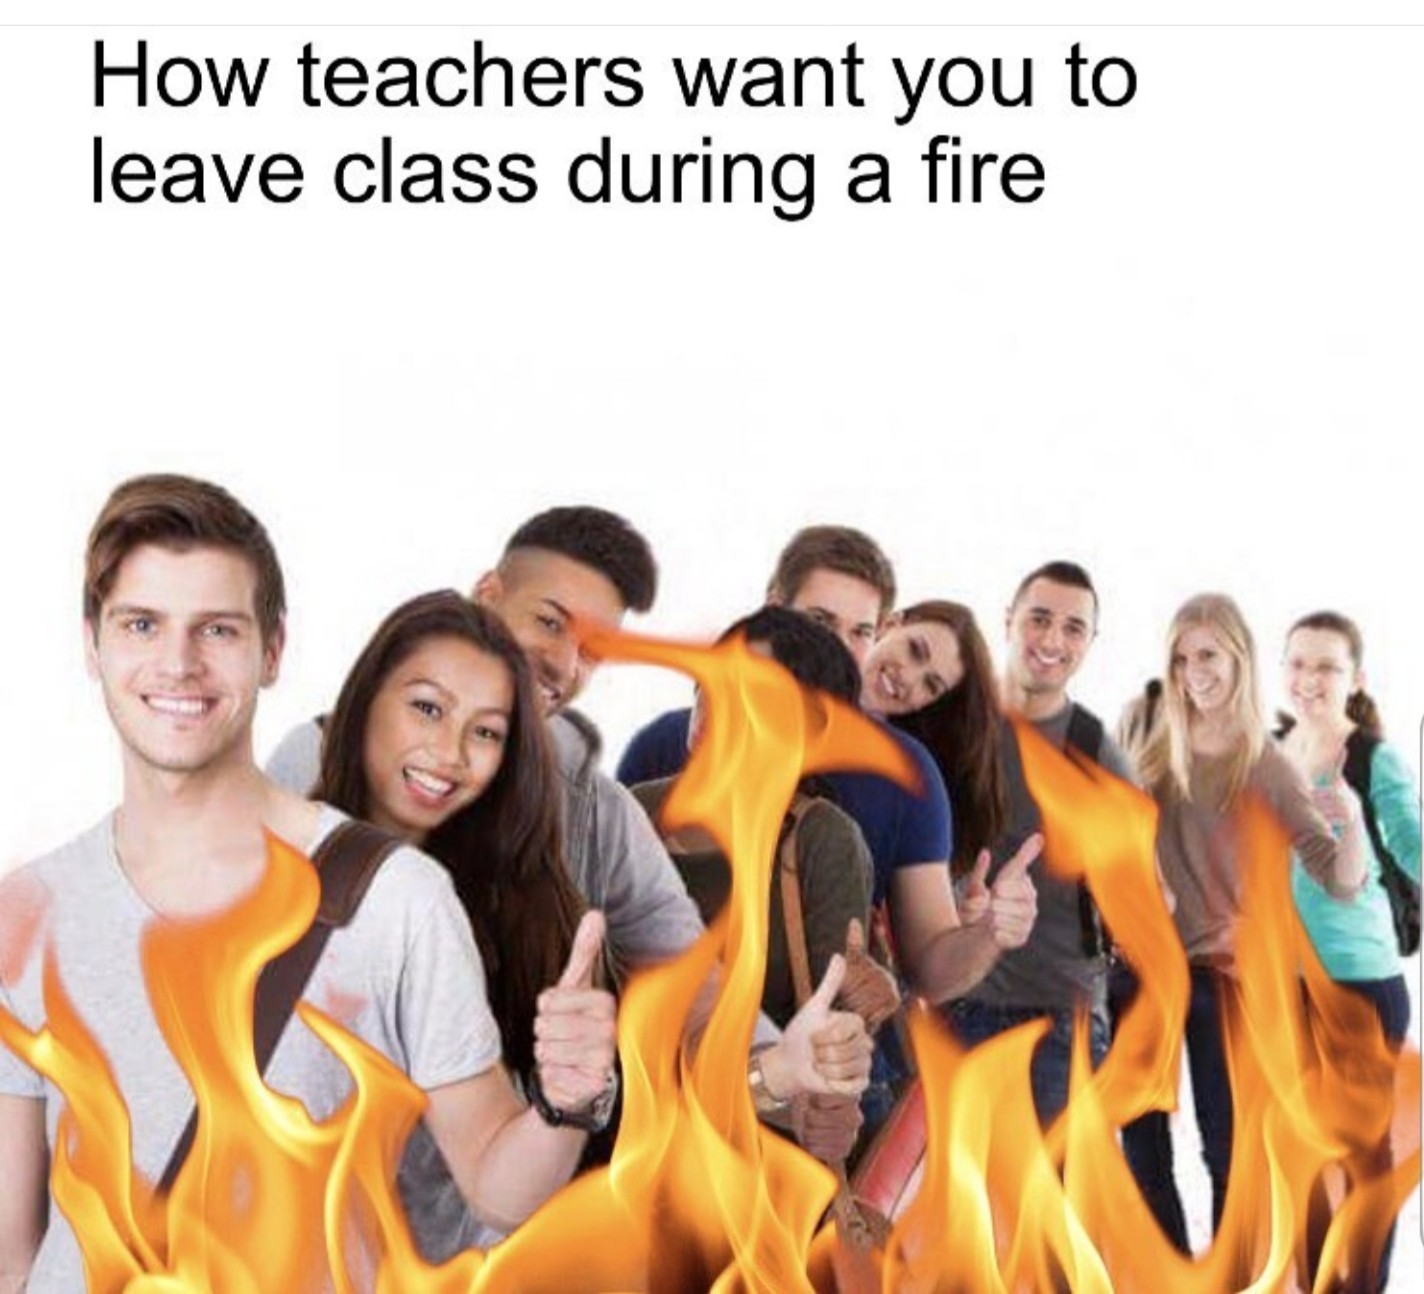 Comment les profs veulent qu'on quitte la salle pendant le feu - meme